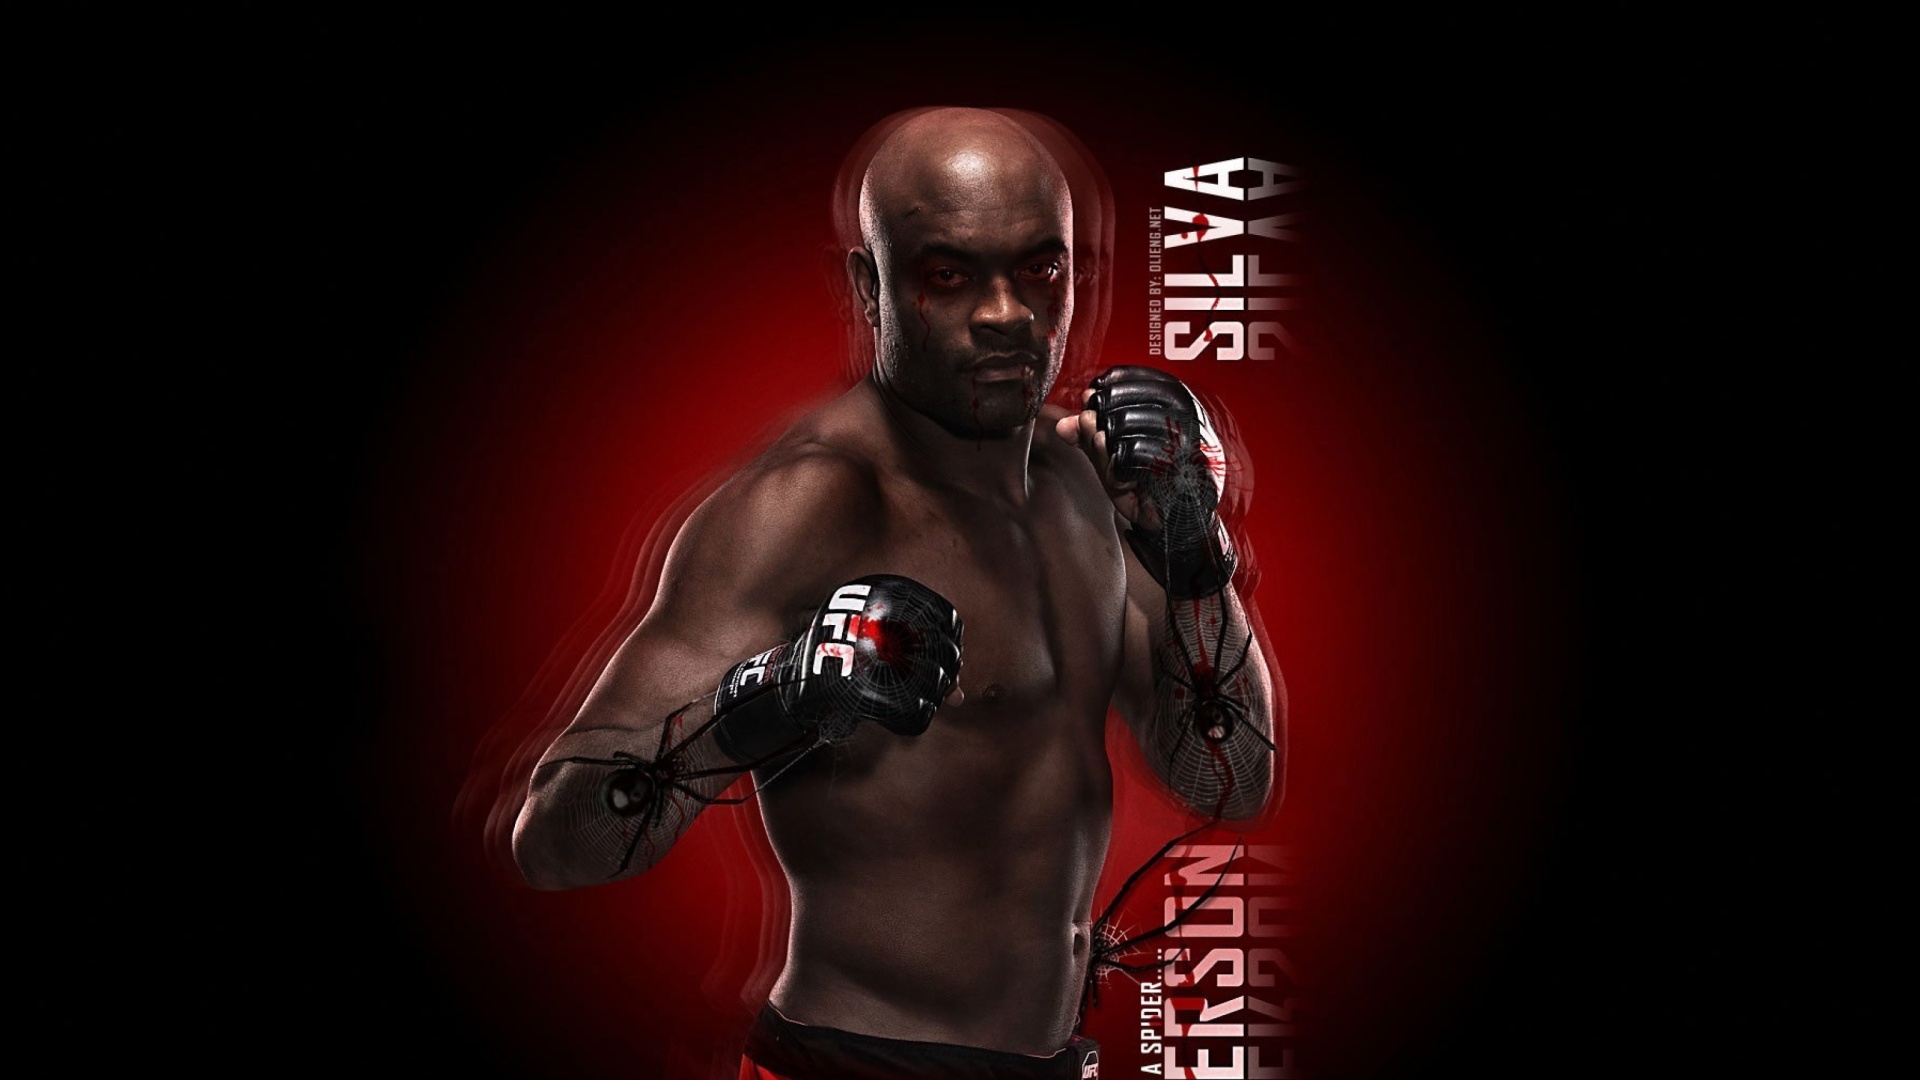 Anderson Silva UFC wallpaper 1920x1080